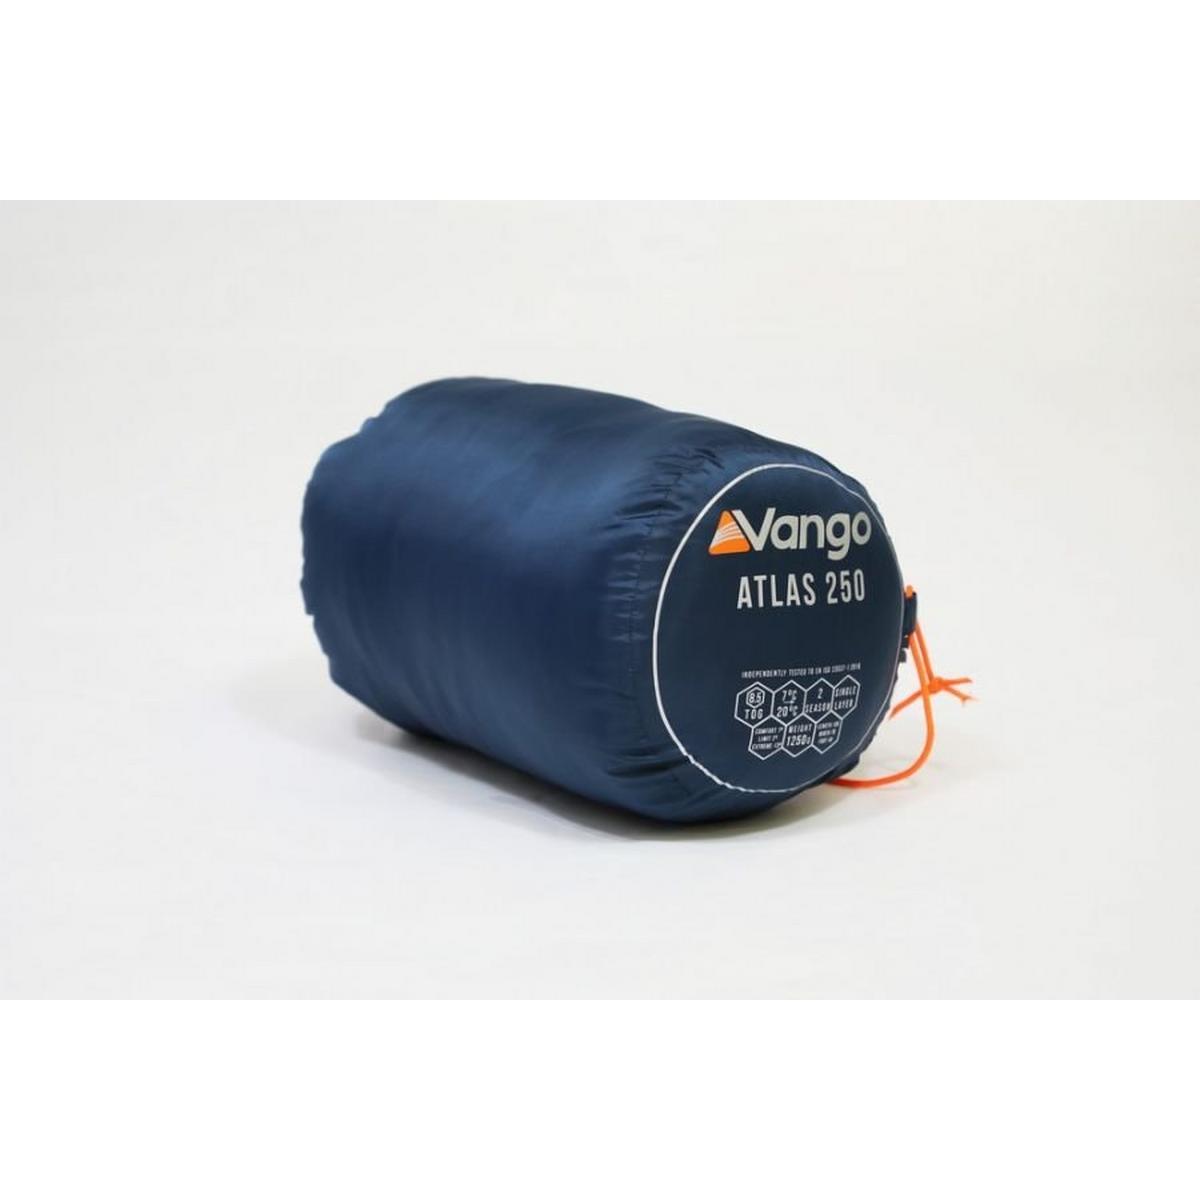 Vango Atlas 250 Sleeping Bag - Blue